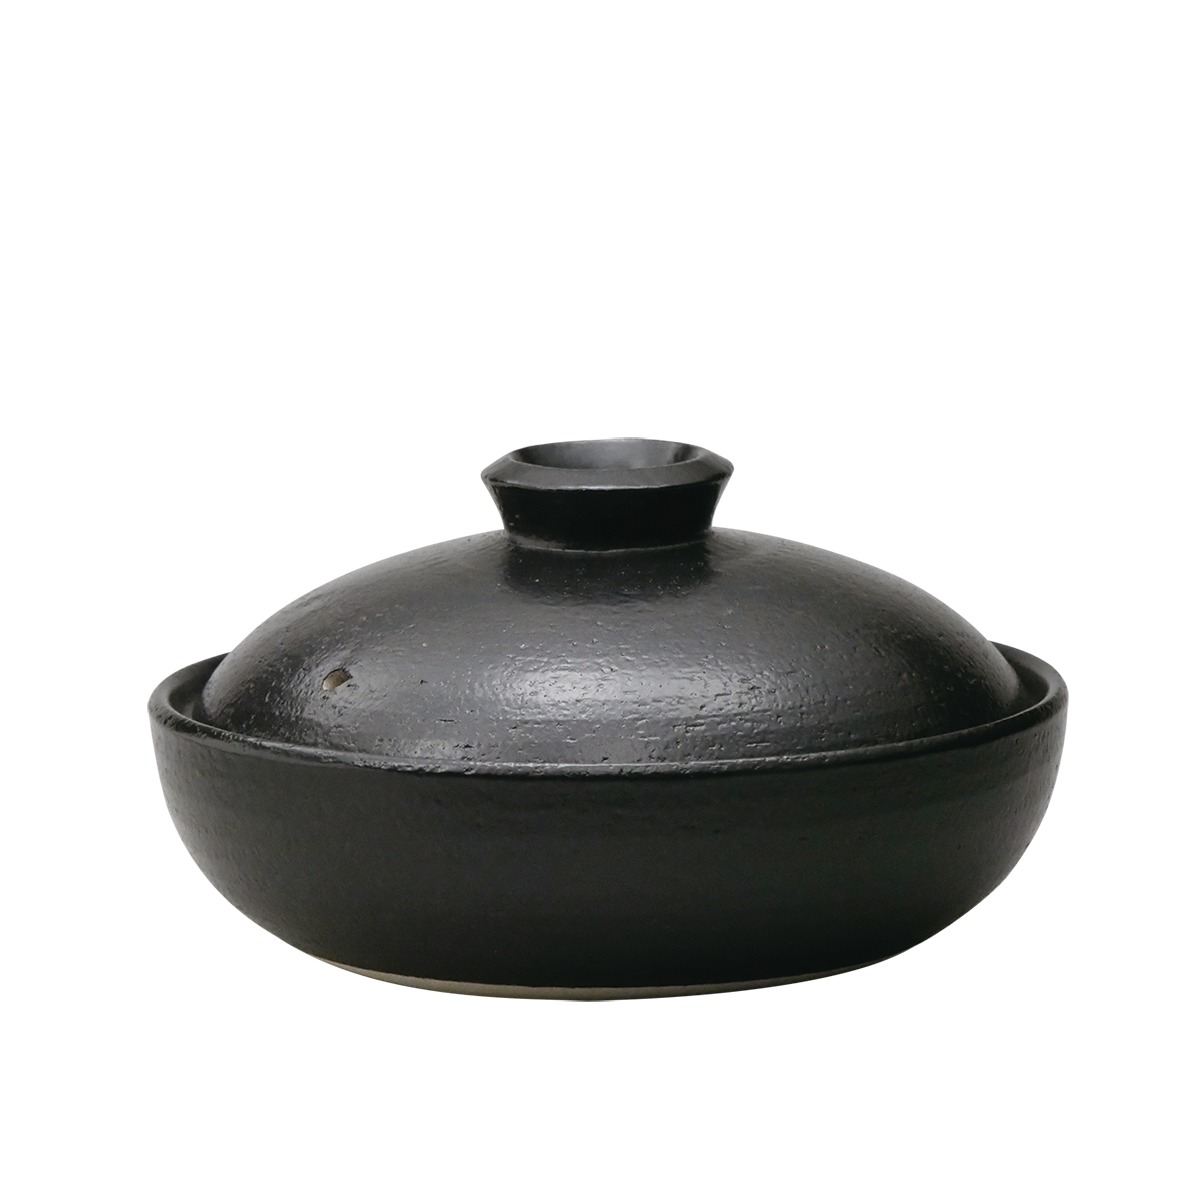 日常茶飯器 黒 7.5号平鍋(持手なし)